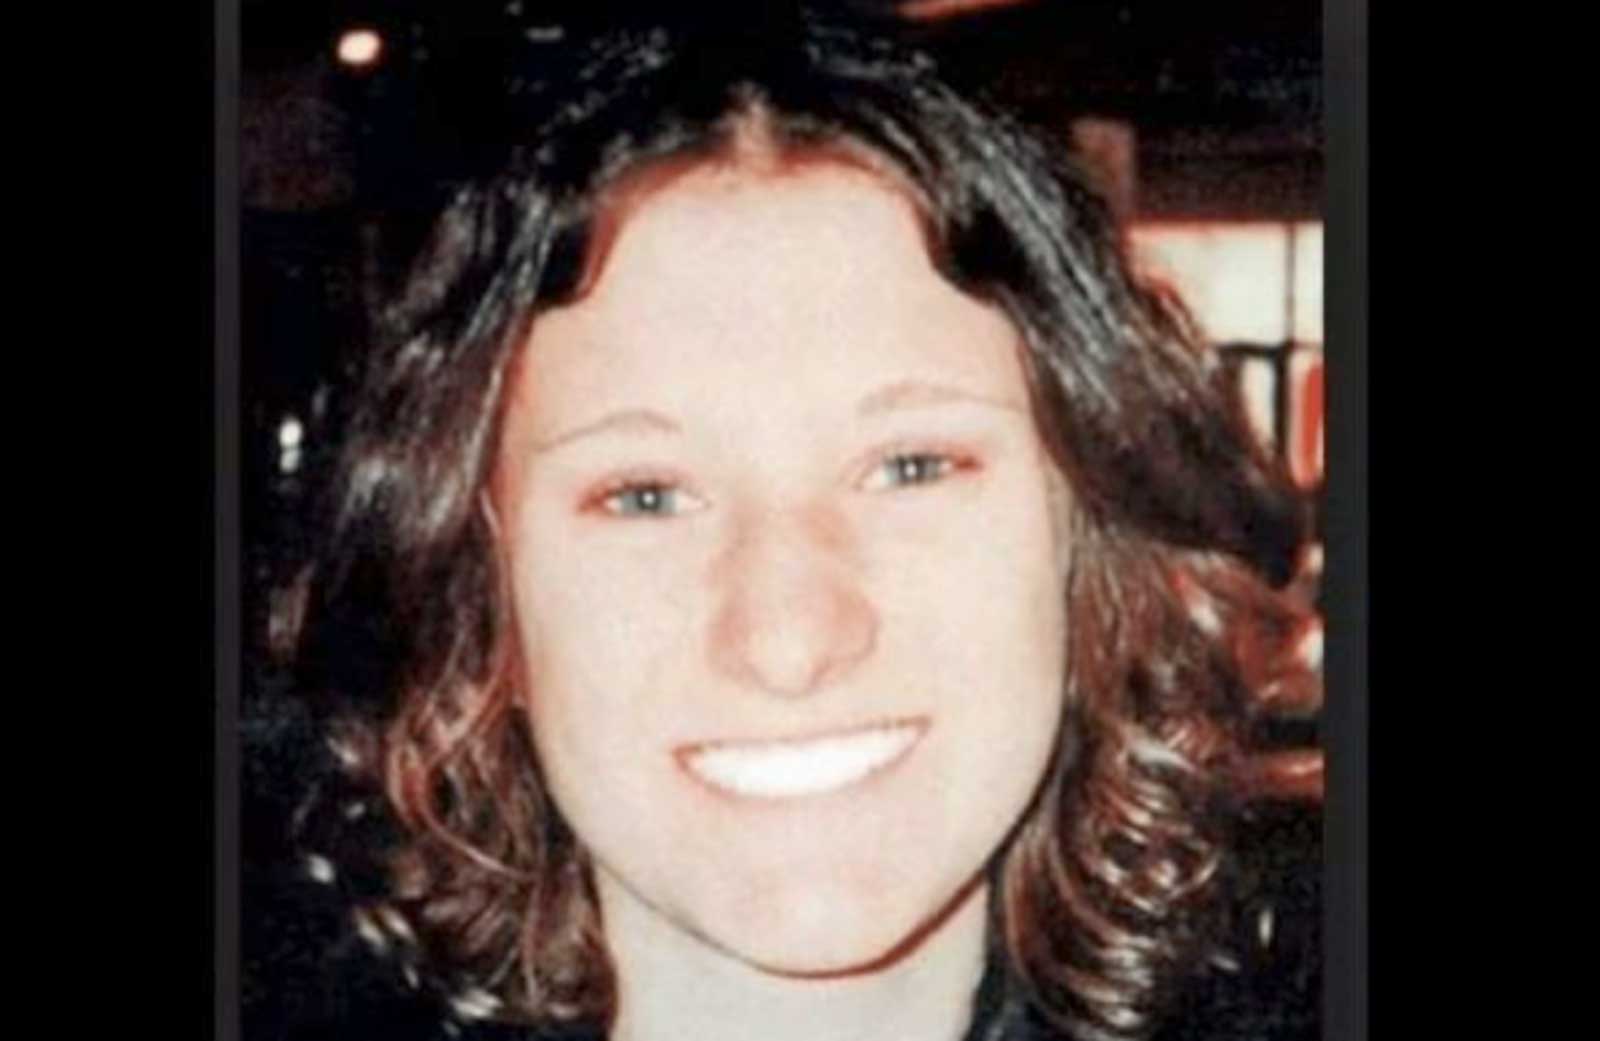 Serena Mollicone, foto d'archivio della ragazza morta in circostanze ancora oscure